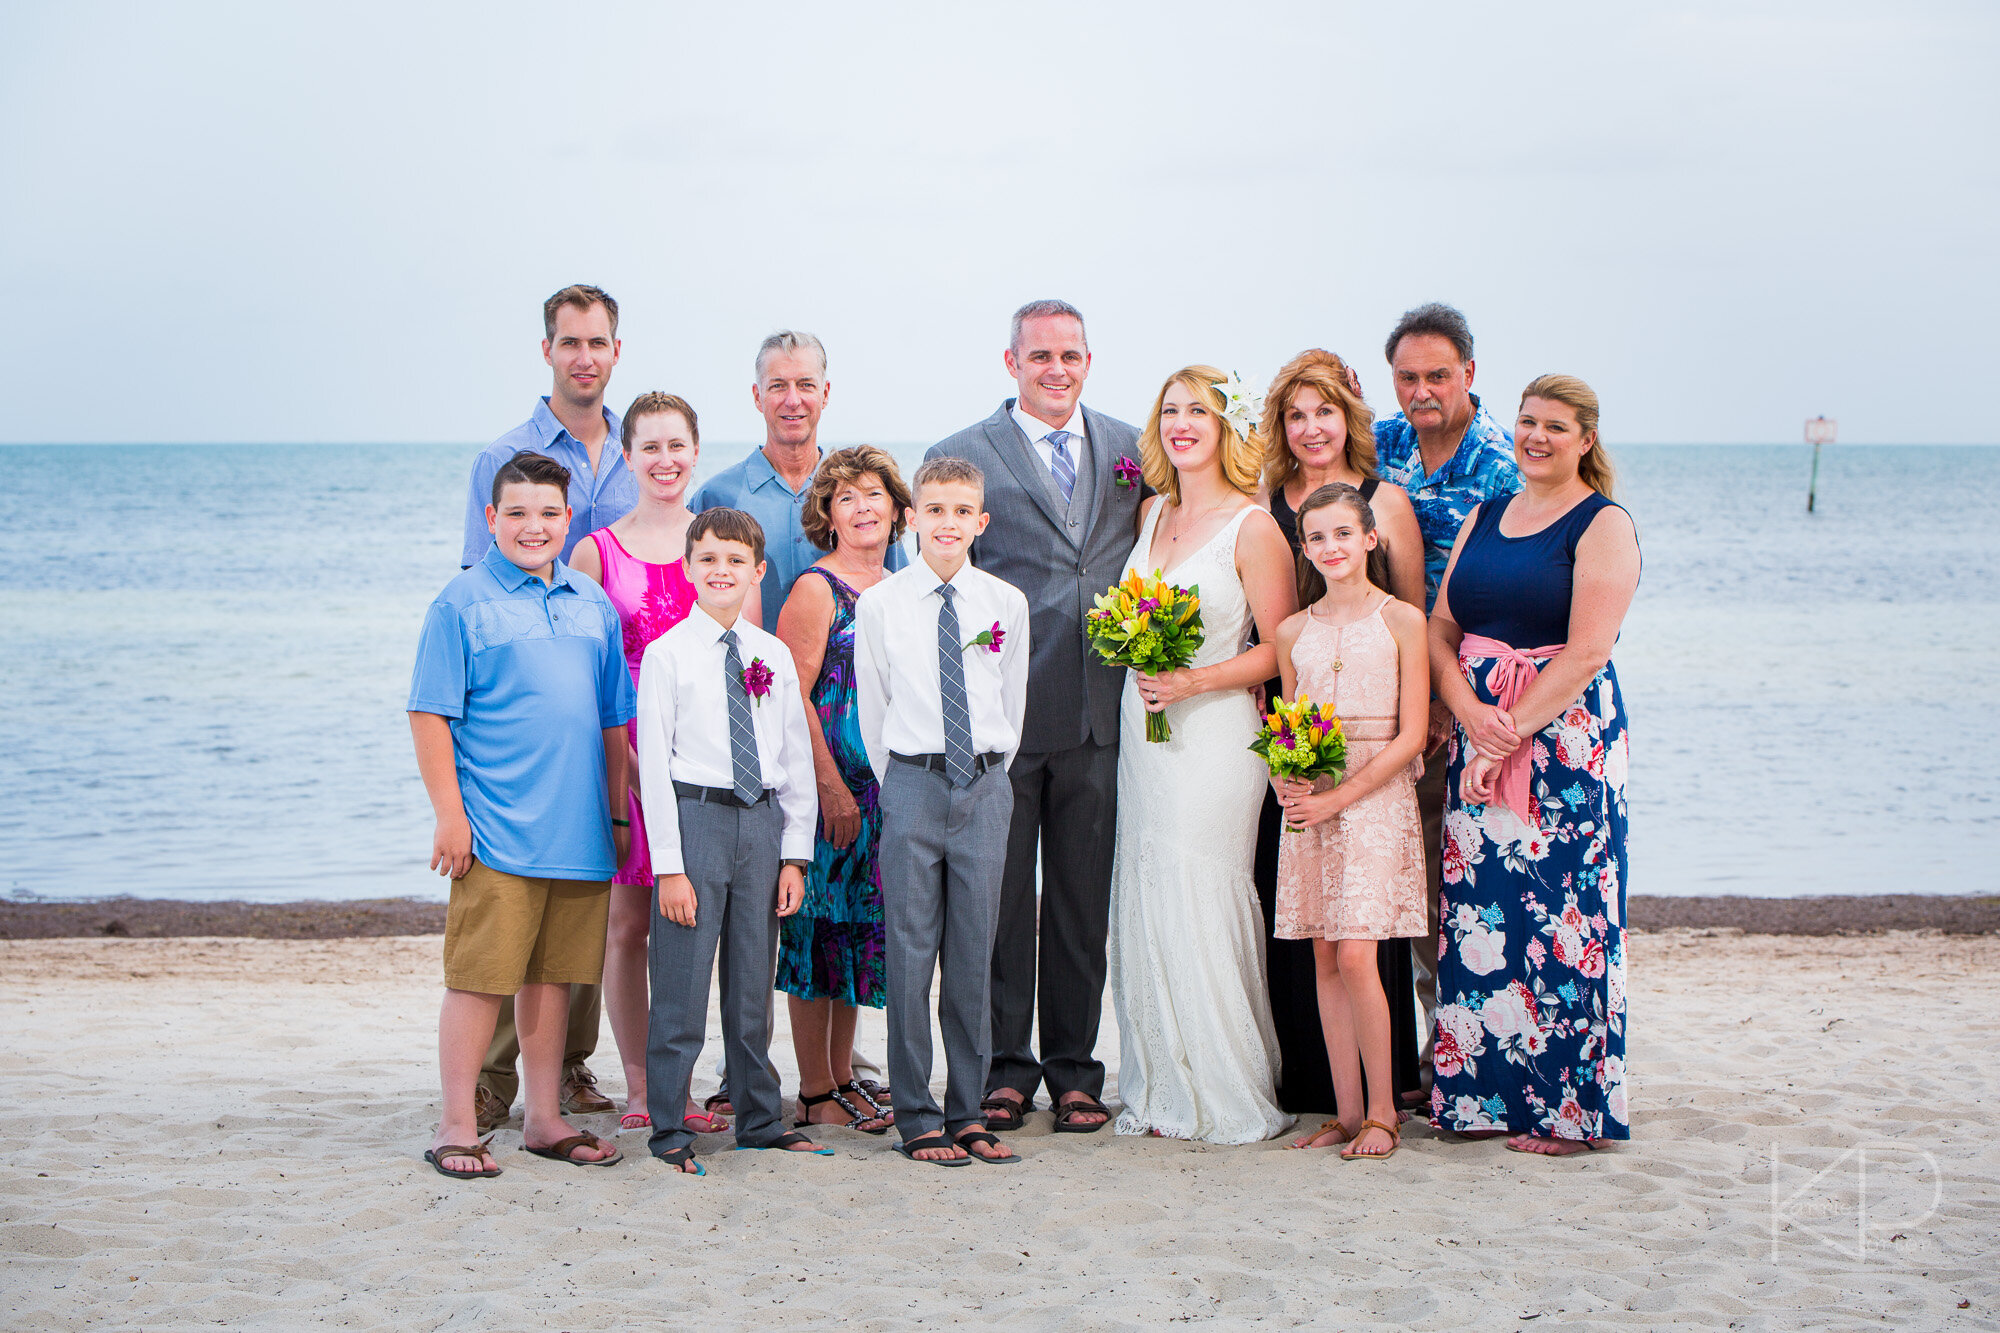 Smathers Beach Wedding Ceremony in Key West